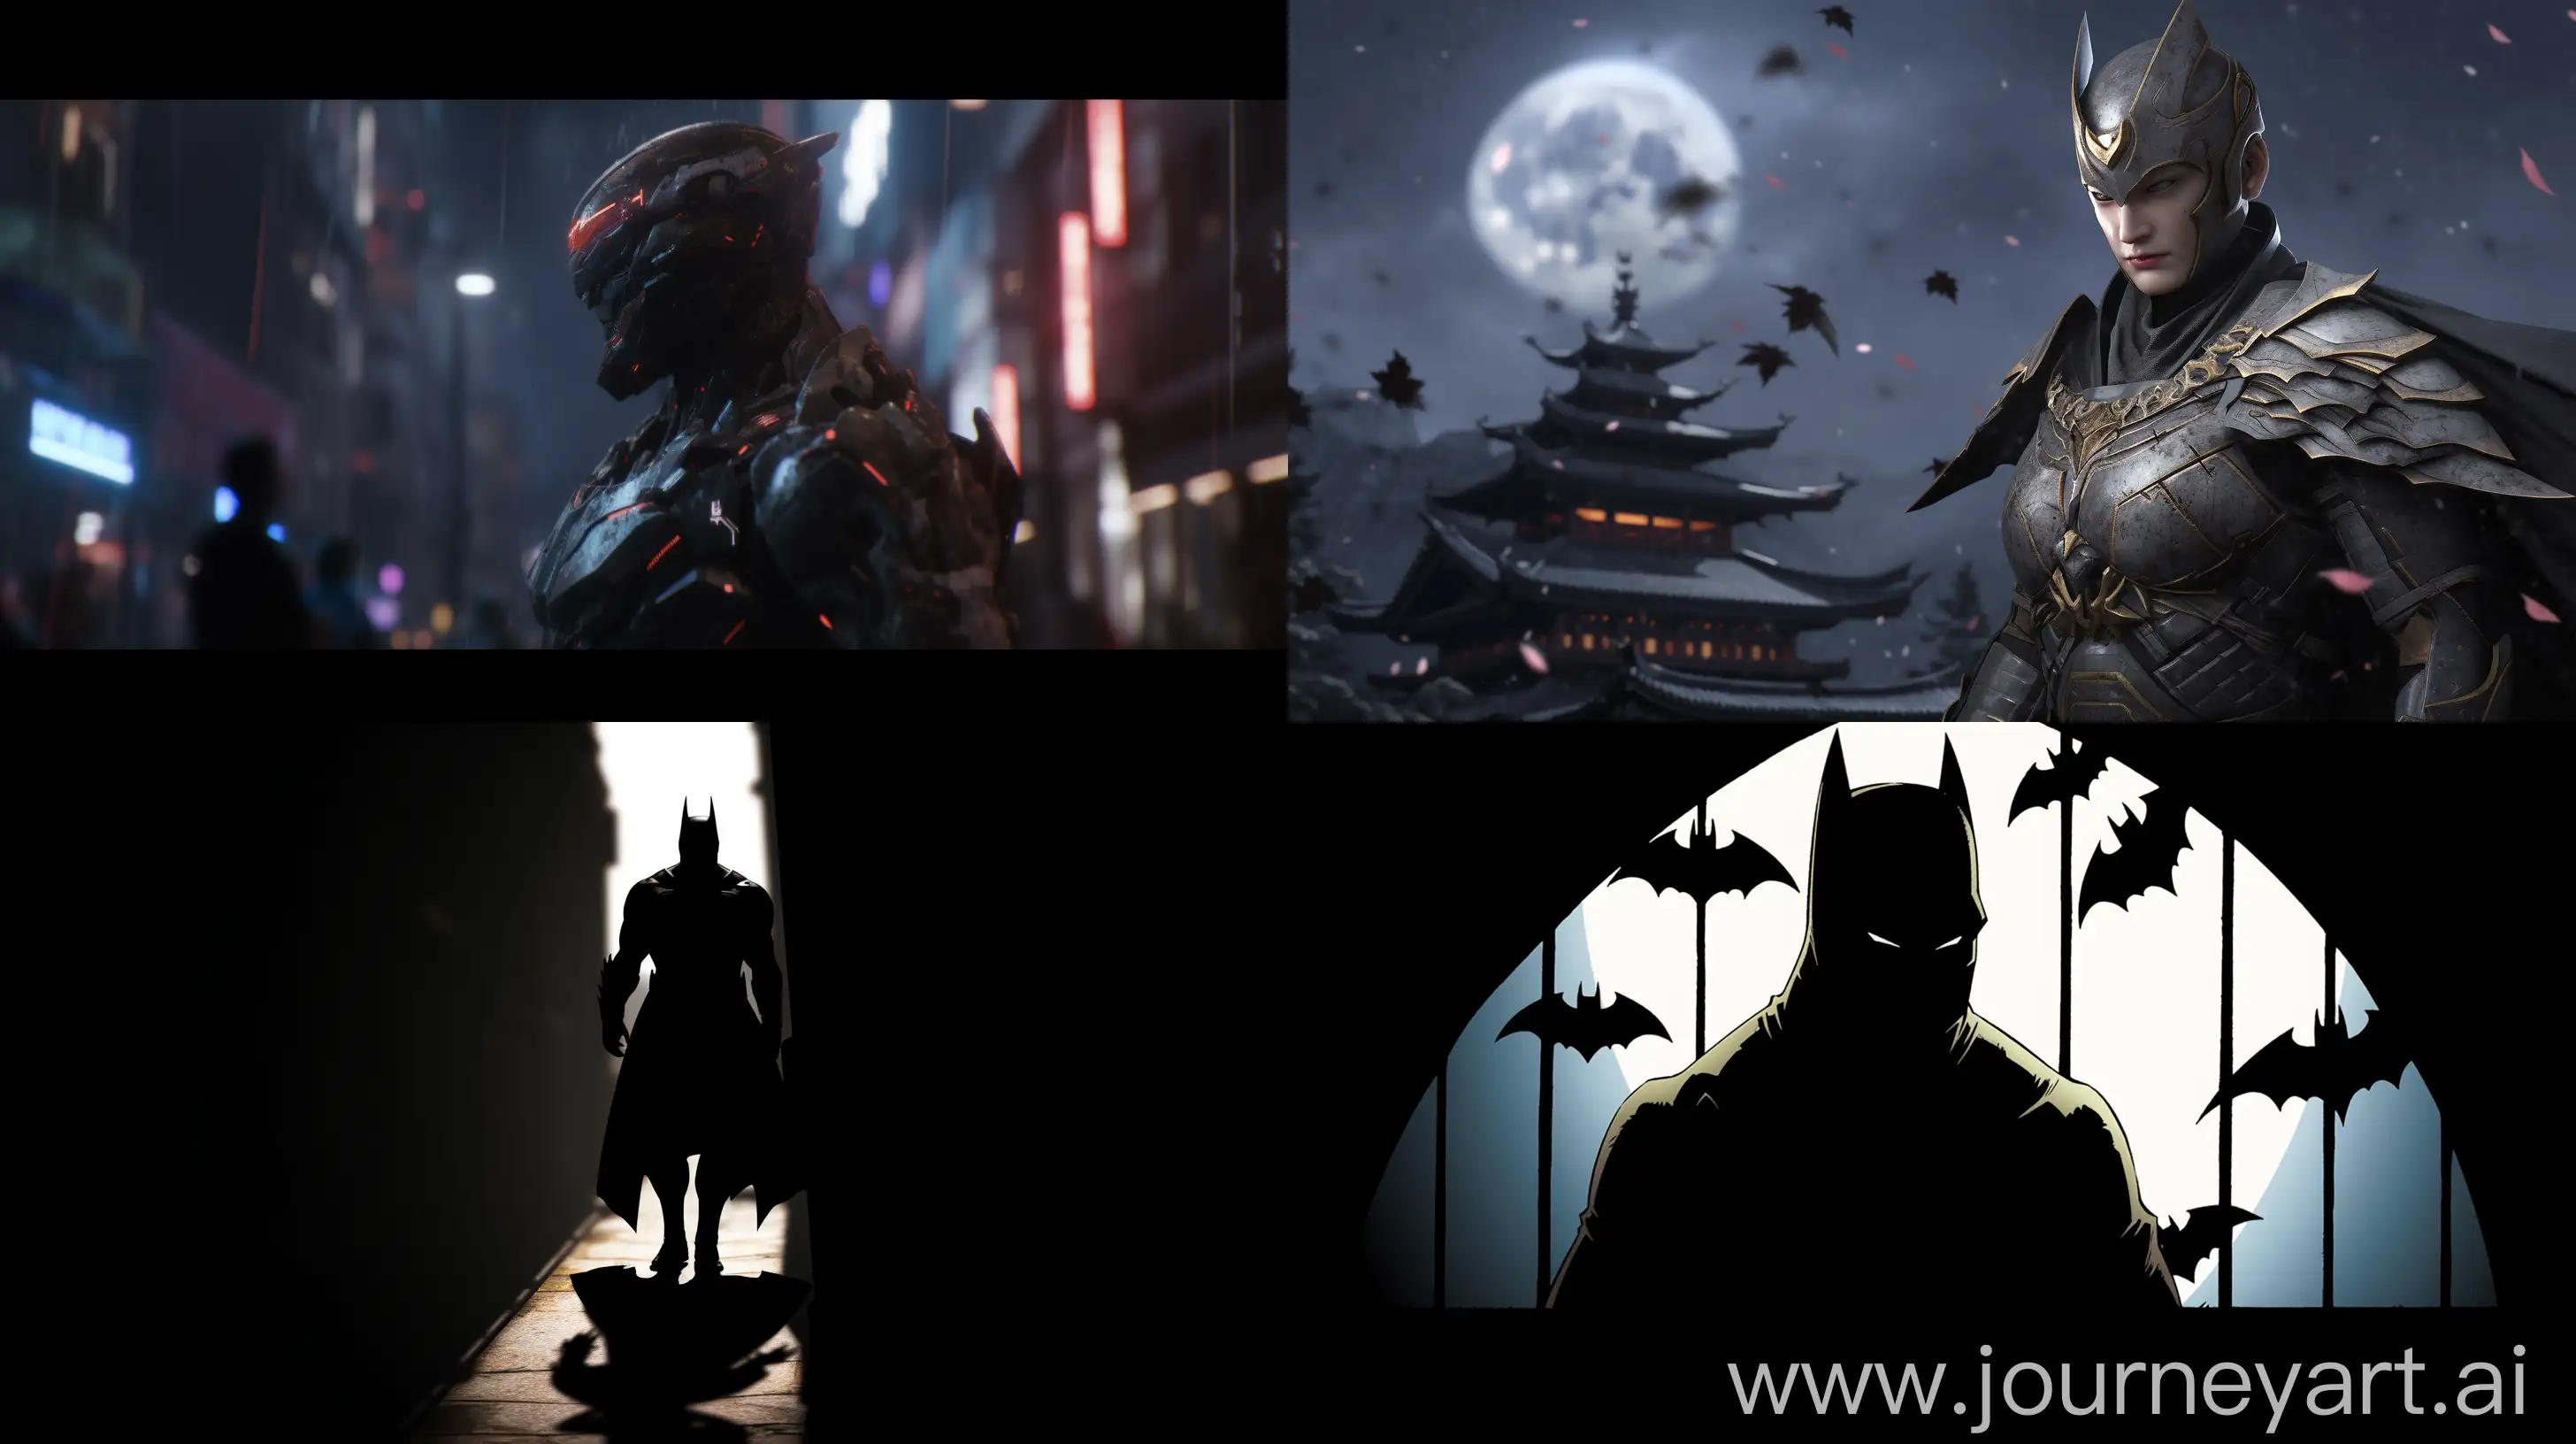 Mysterious-Hero-Batman-Emerges-in-Tokyos-Dark-Urban-Alleyway